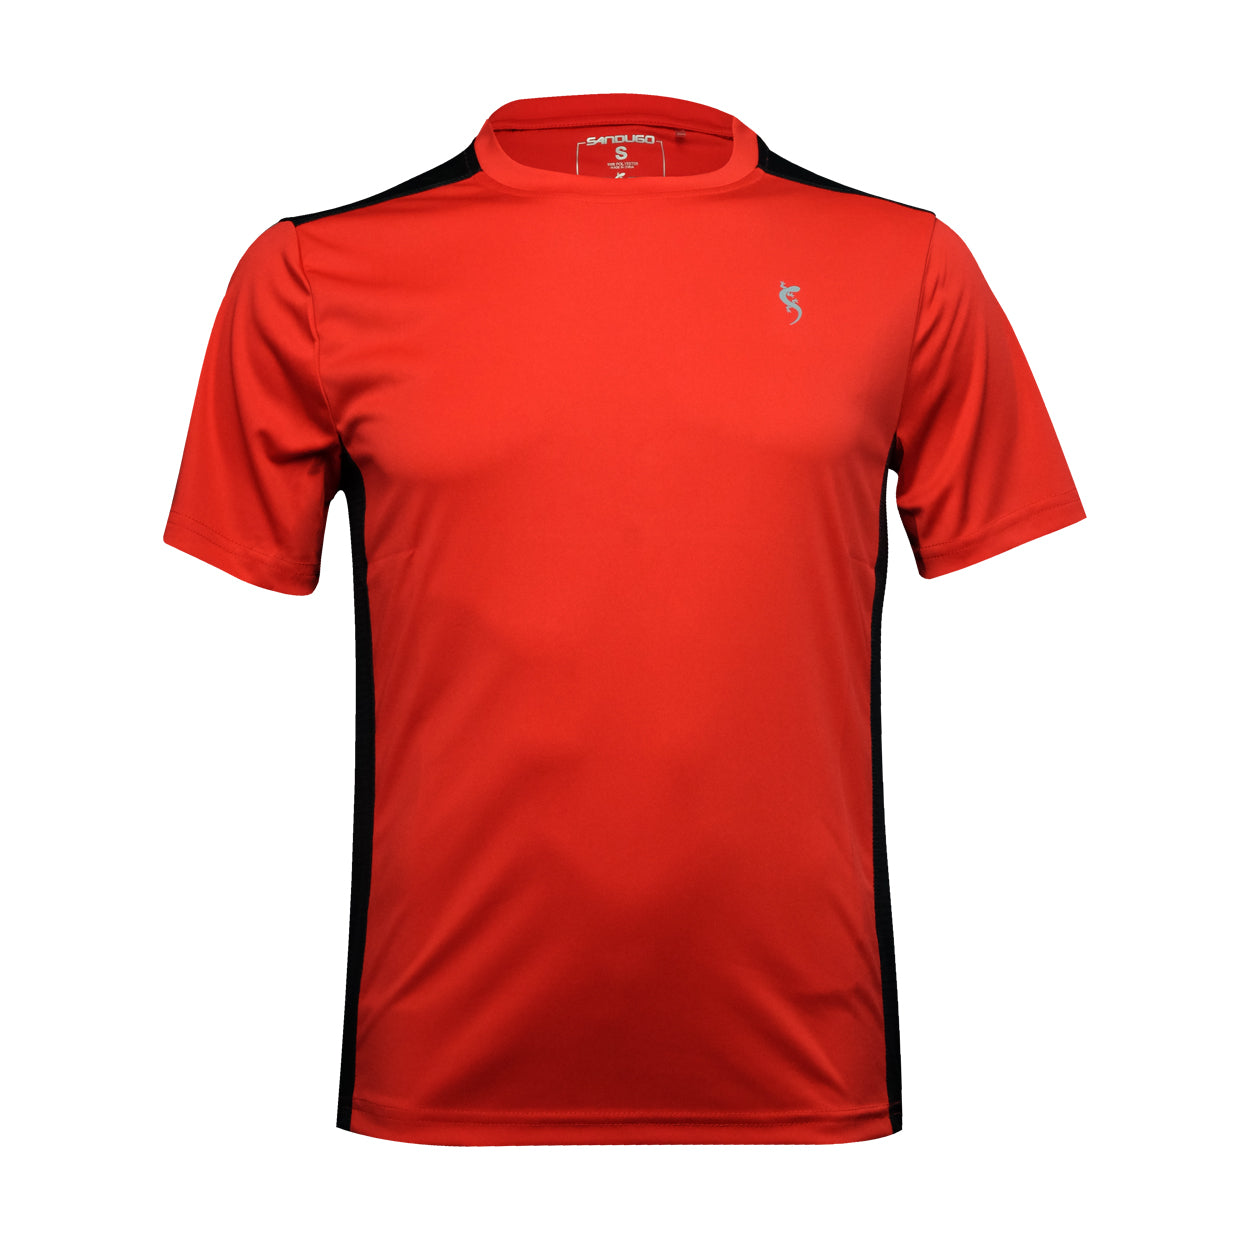 Sandugo Atletx Technical T-Shirt